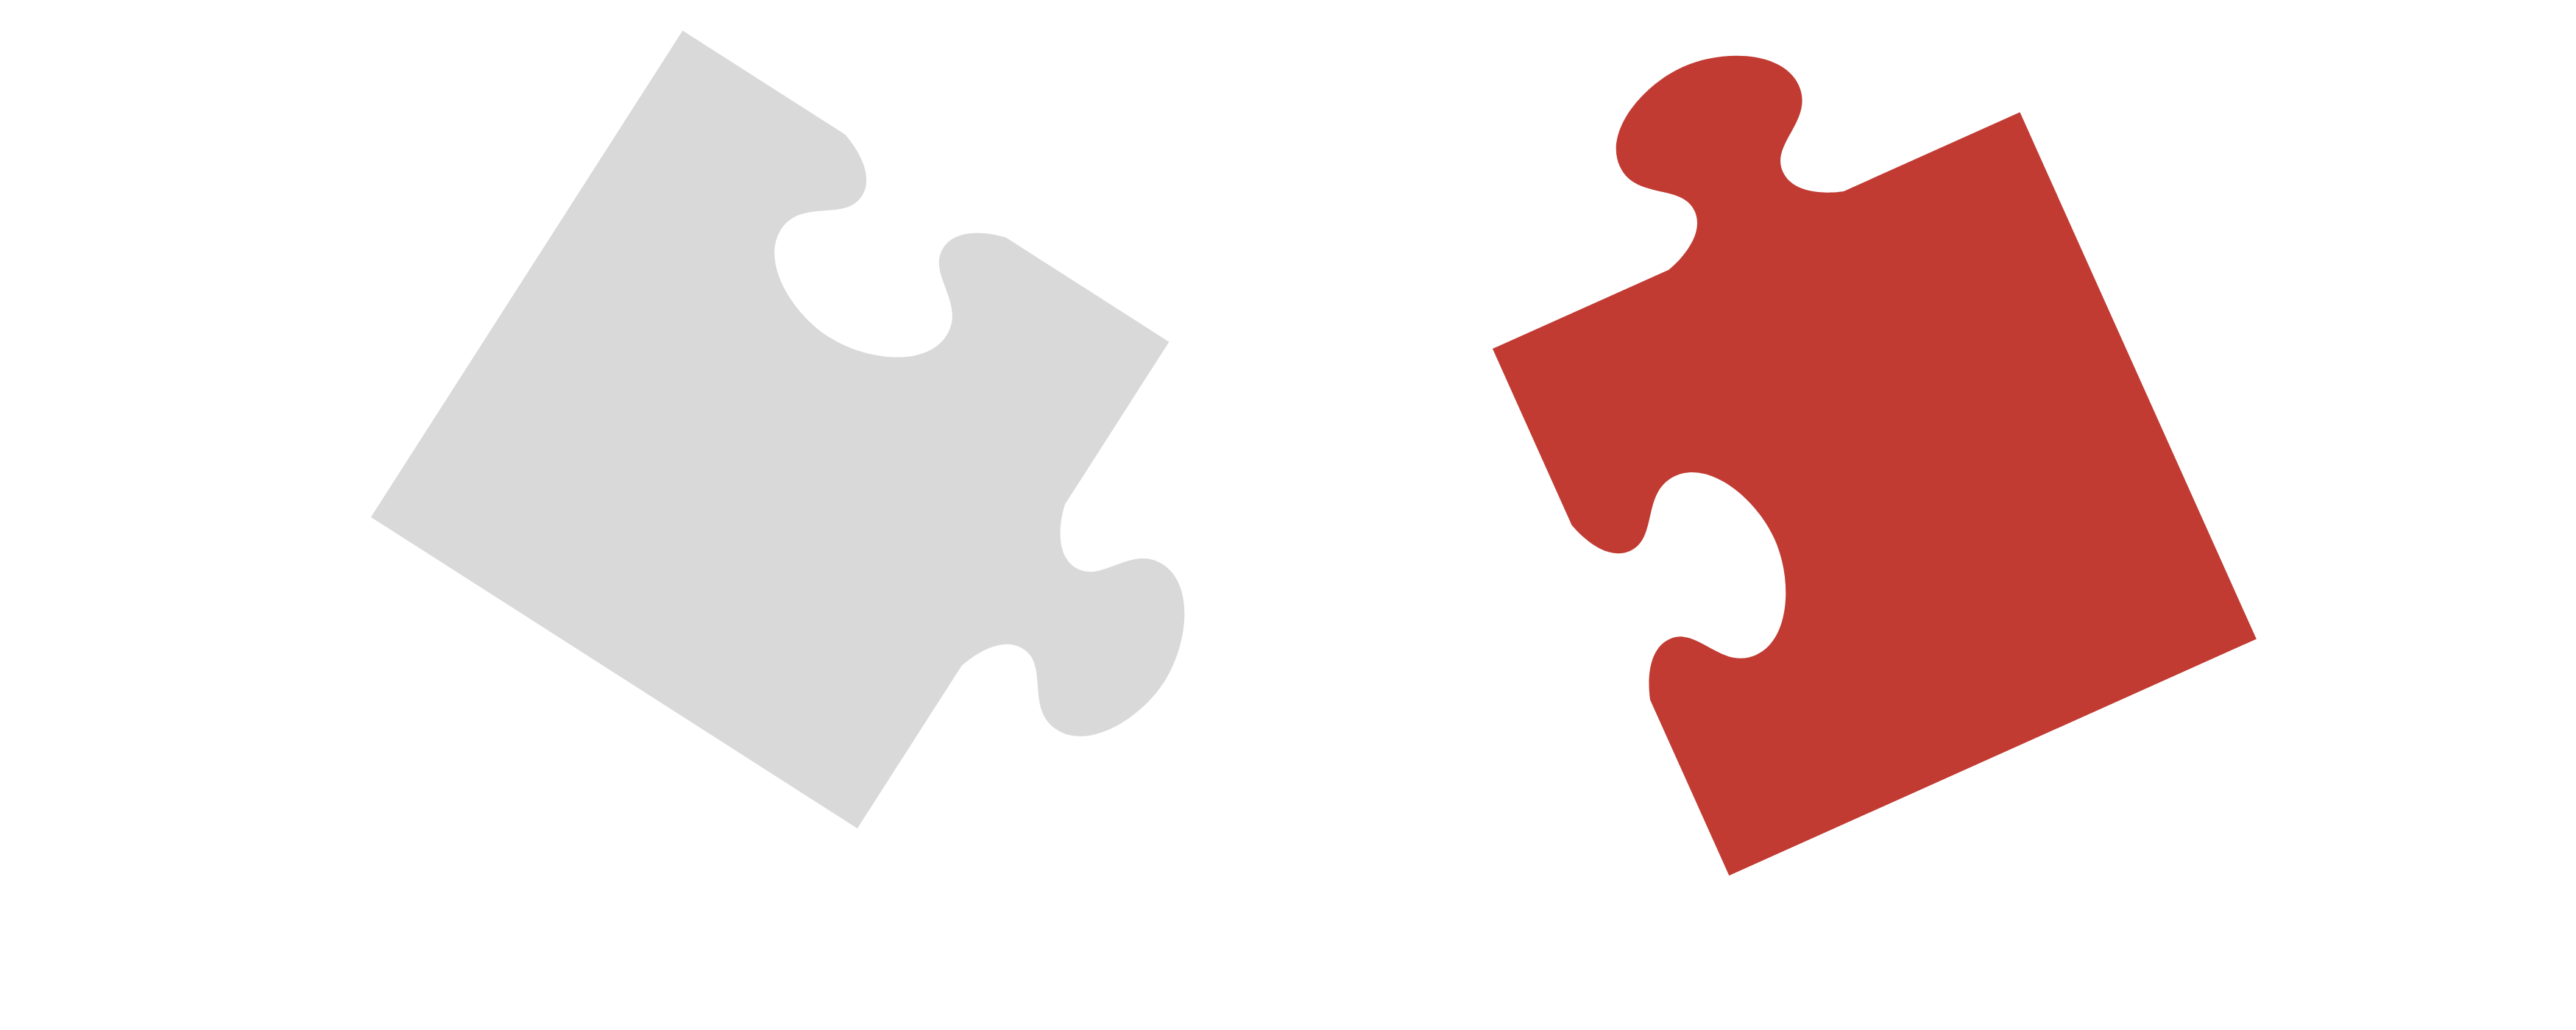 2 Puzzleteile rot und grau